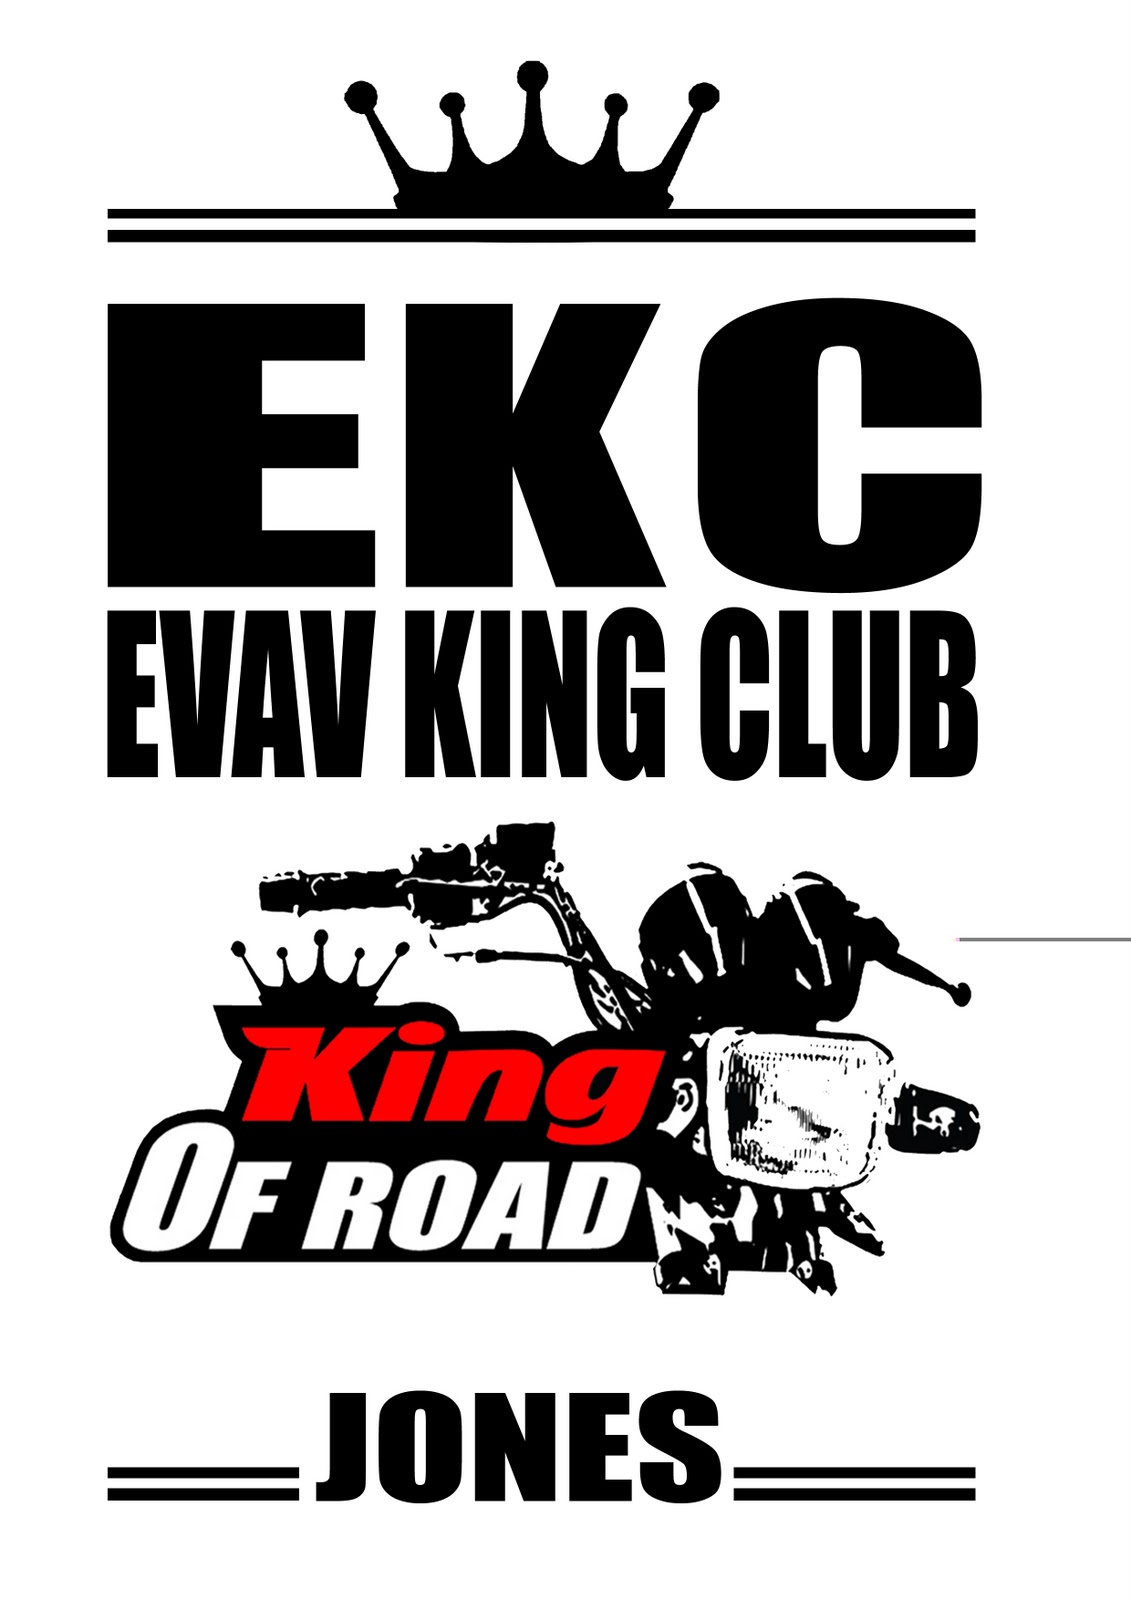 Evav King Club: Photos